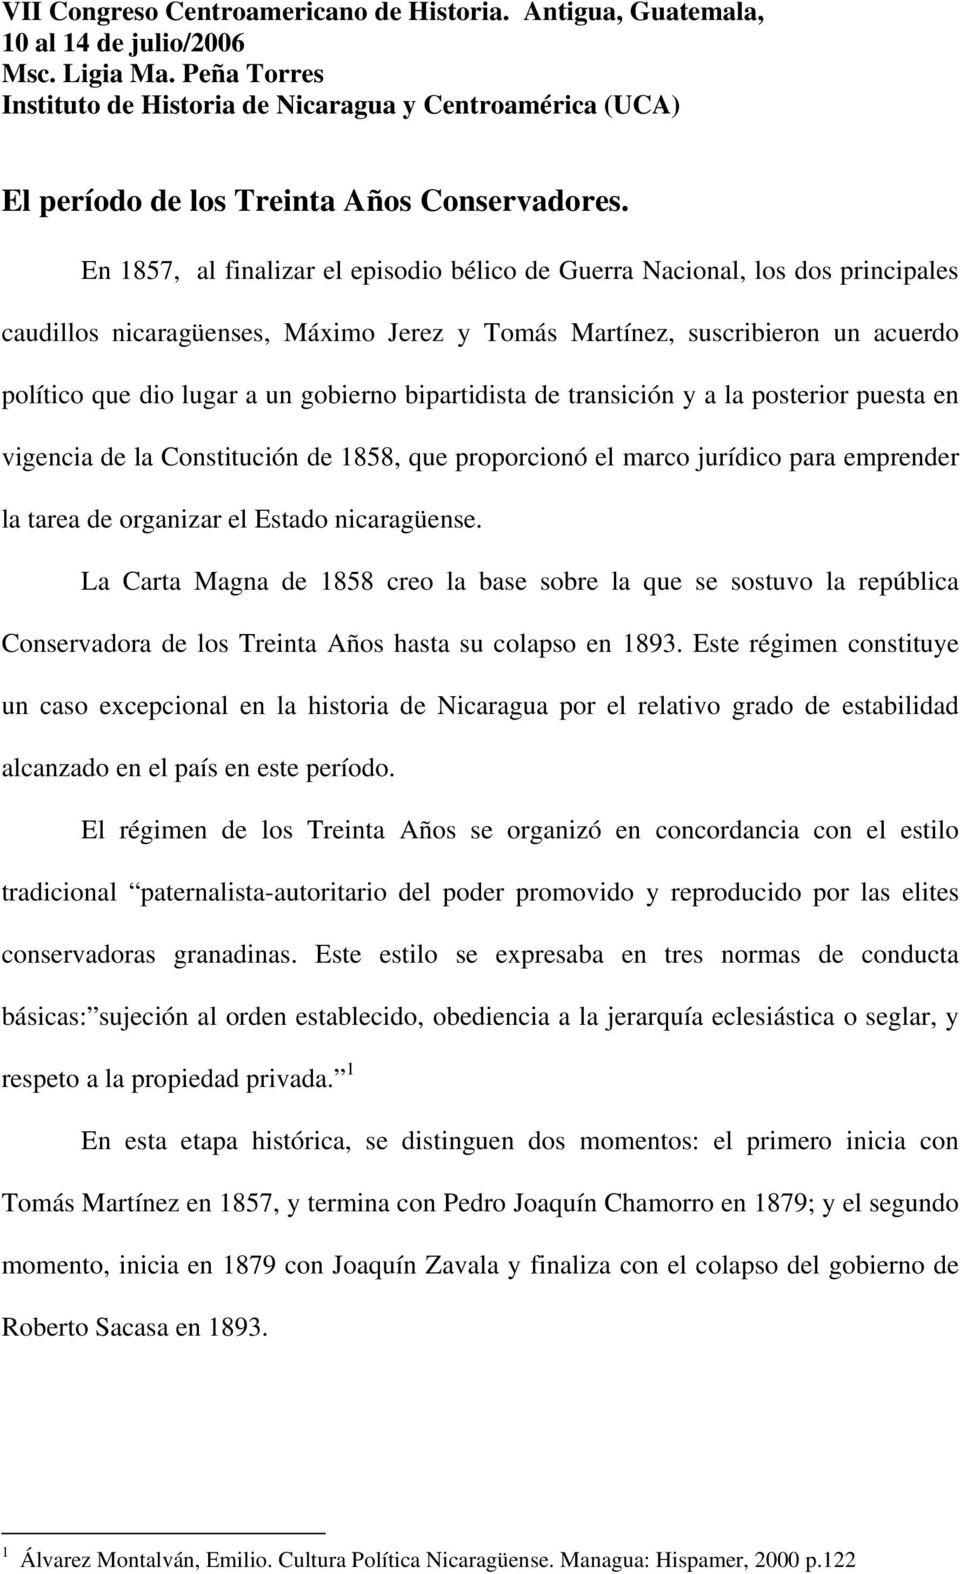 En 1857, al finalizar el episodio bélico de Guerra Nacional, los dos principales caudillos nicaragüenses, Máximo Jerez y Tomás Martínez, suscribieron un acuerdo político que dio lugar a un gobierno